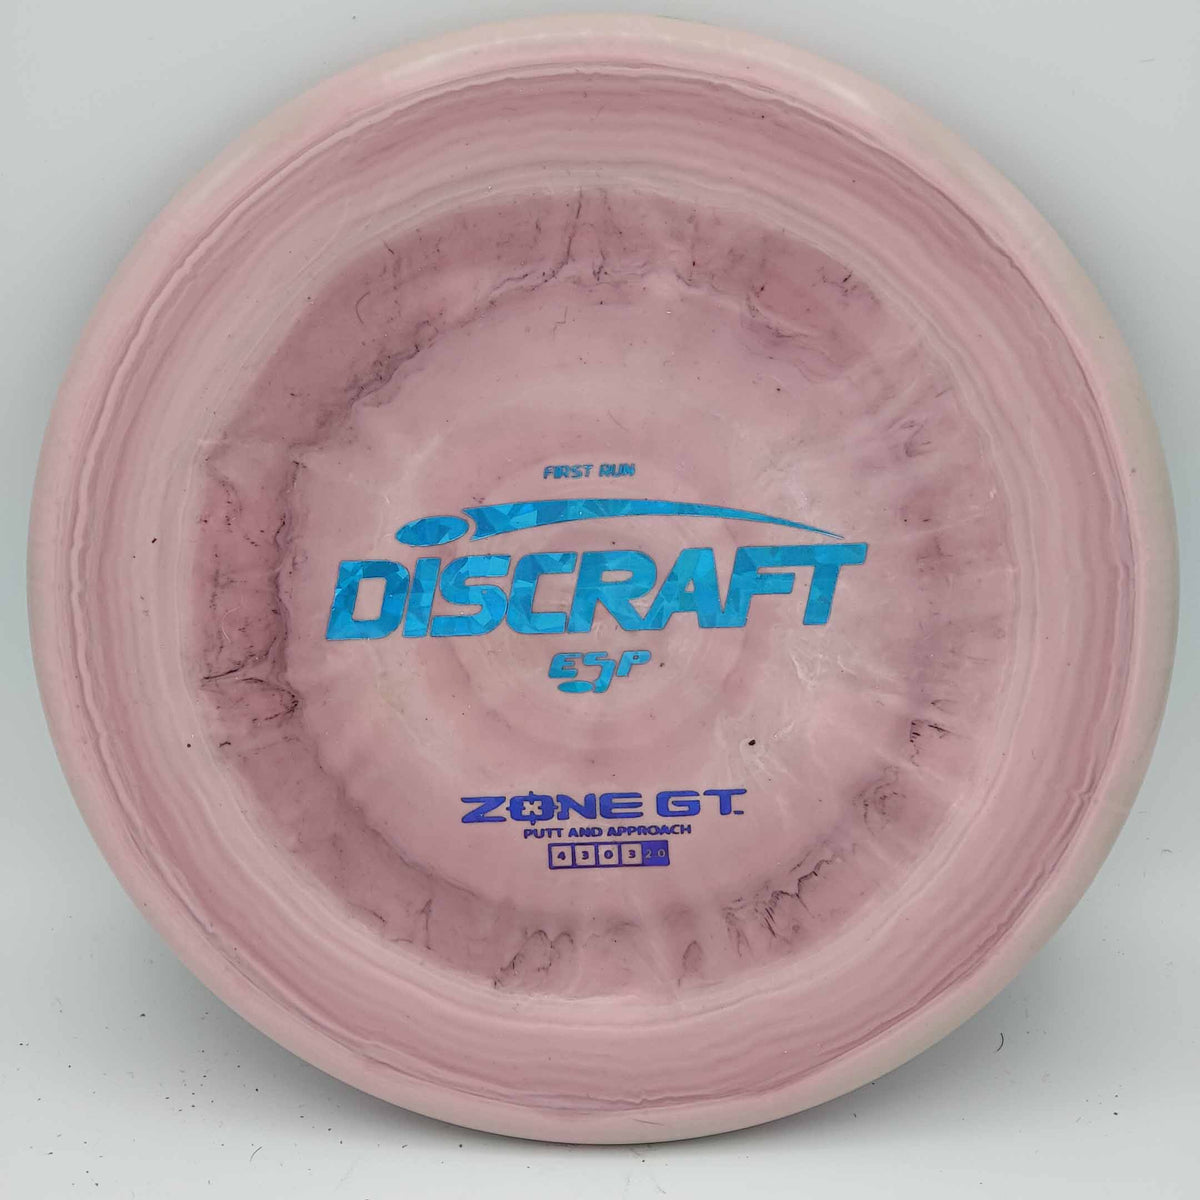 Discraft Zone GT - ESP